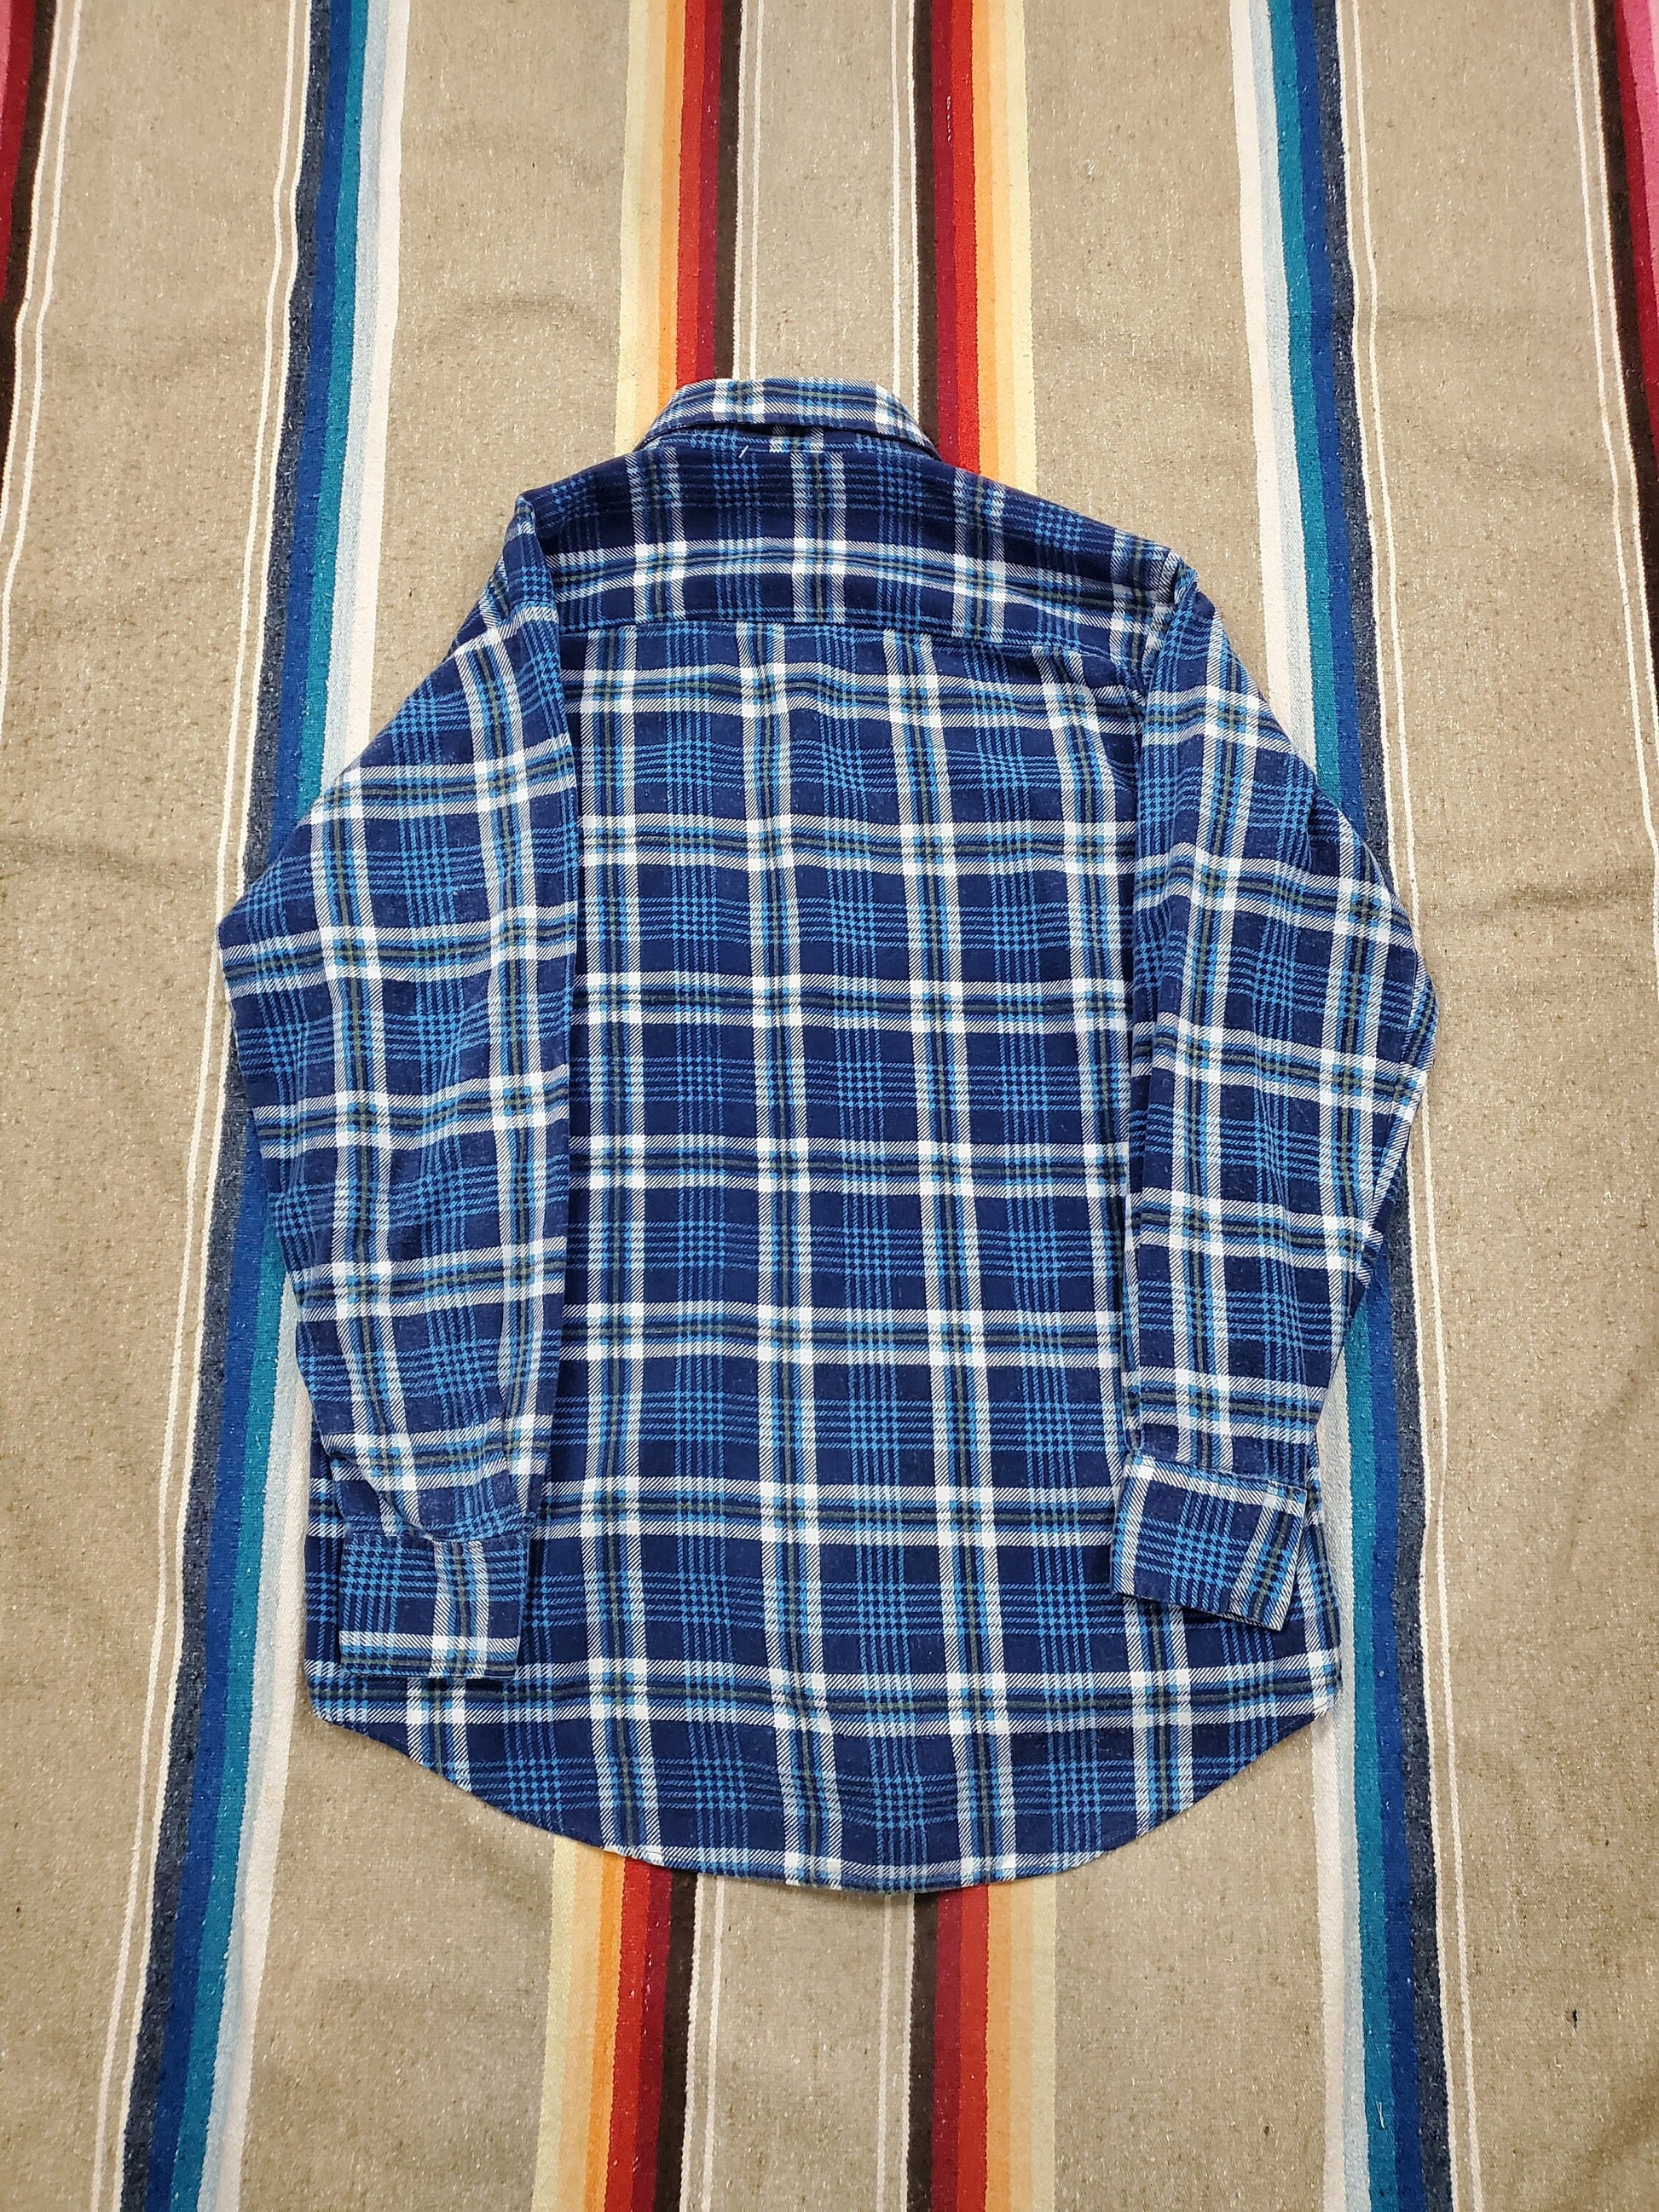 1980s K-Mart Blue Plaid Printed Cotton Flannel Shirt Size M/L